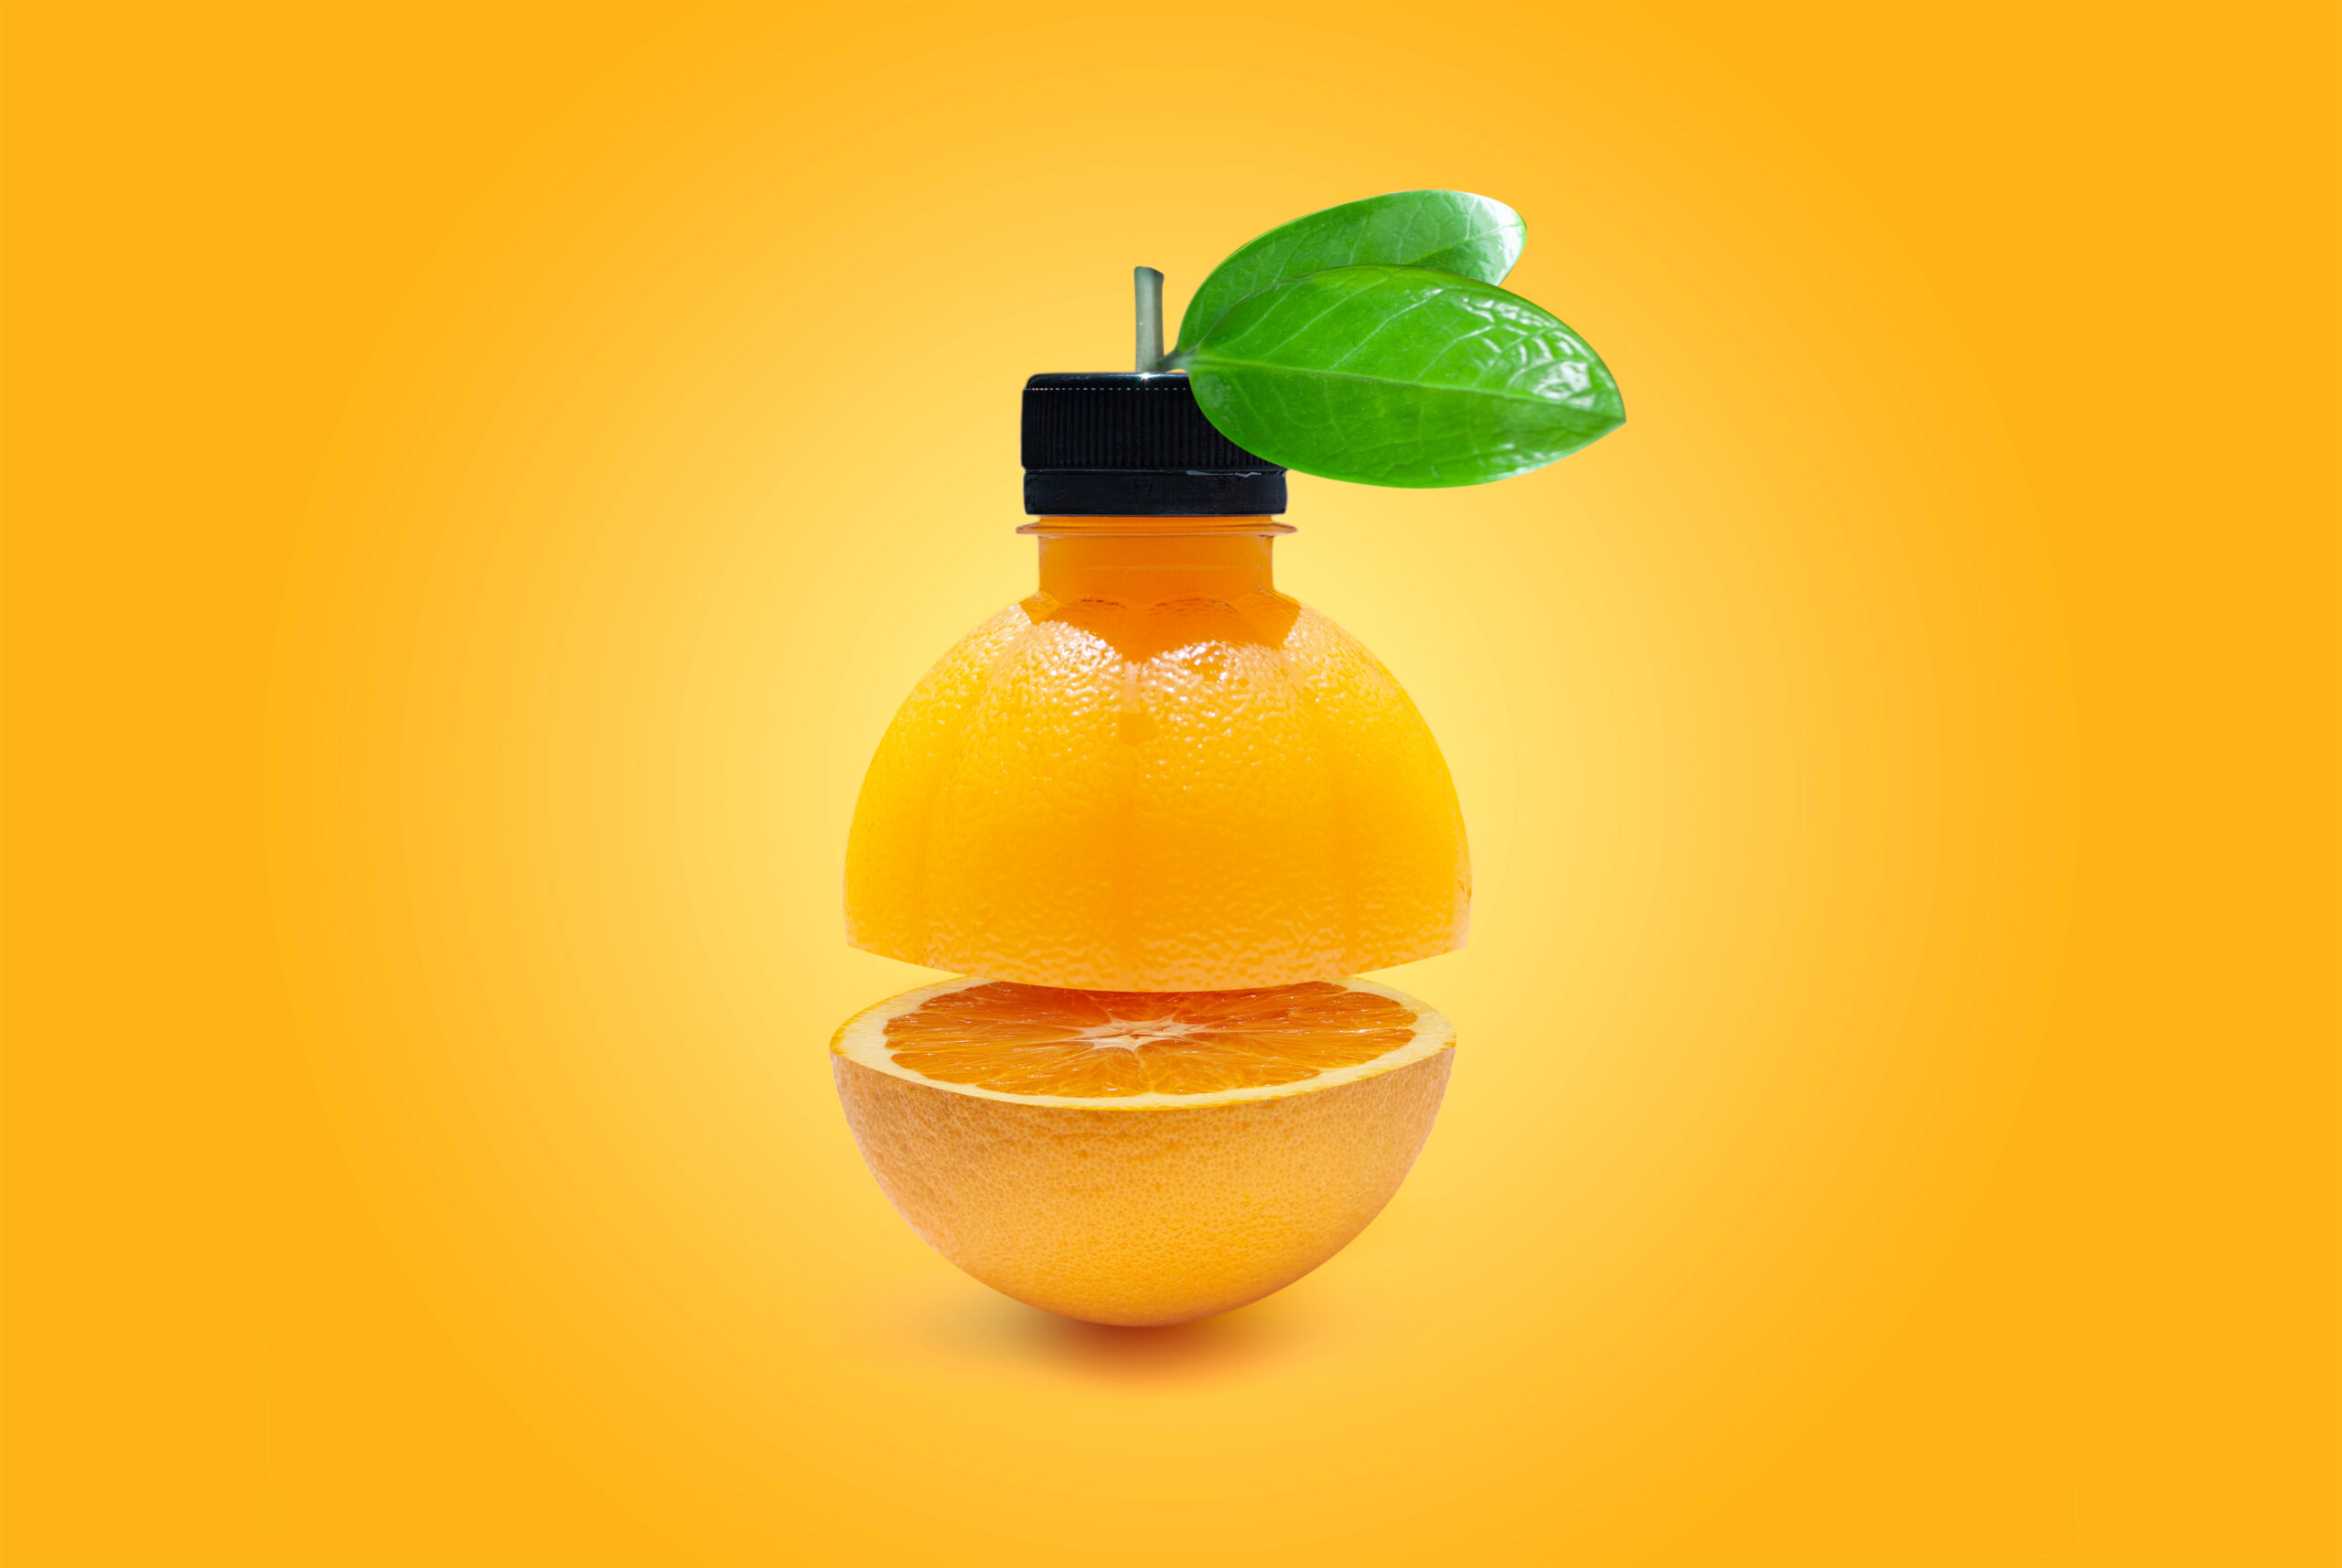 Packaging and storage of orange juice